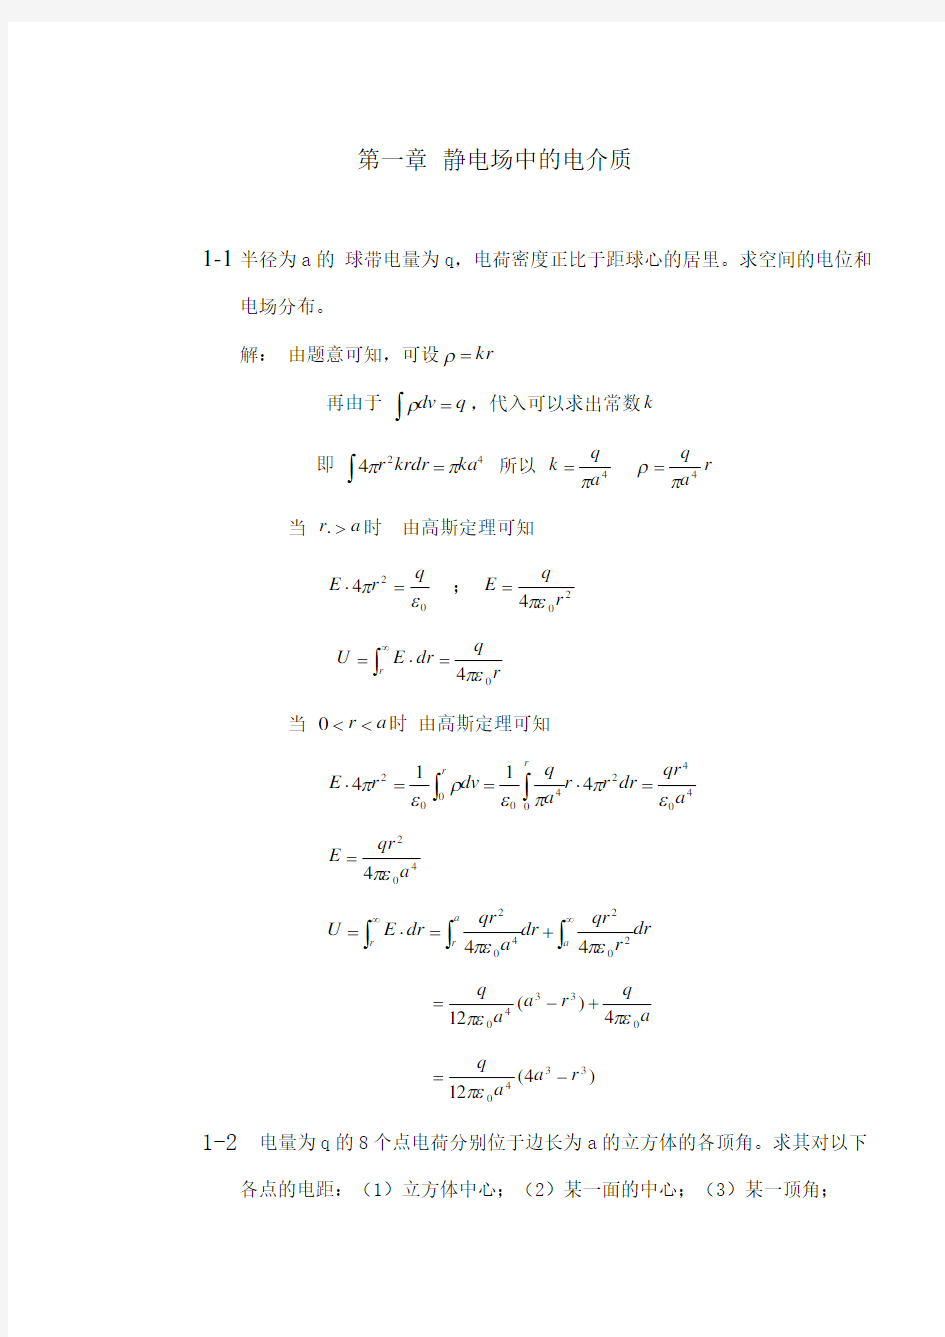 西安交通大学电介质物理姚熹、张良莹课后习题答案第一章